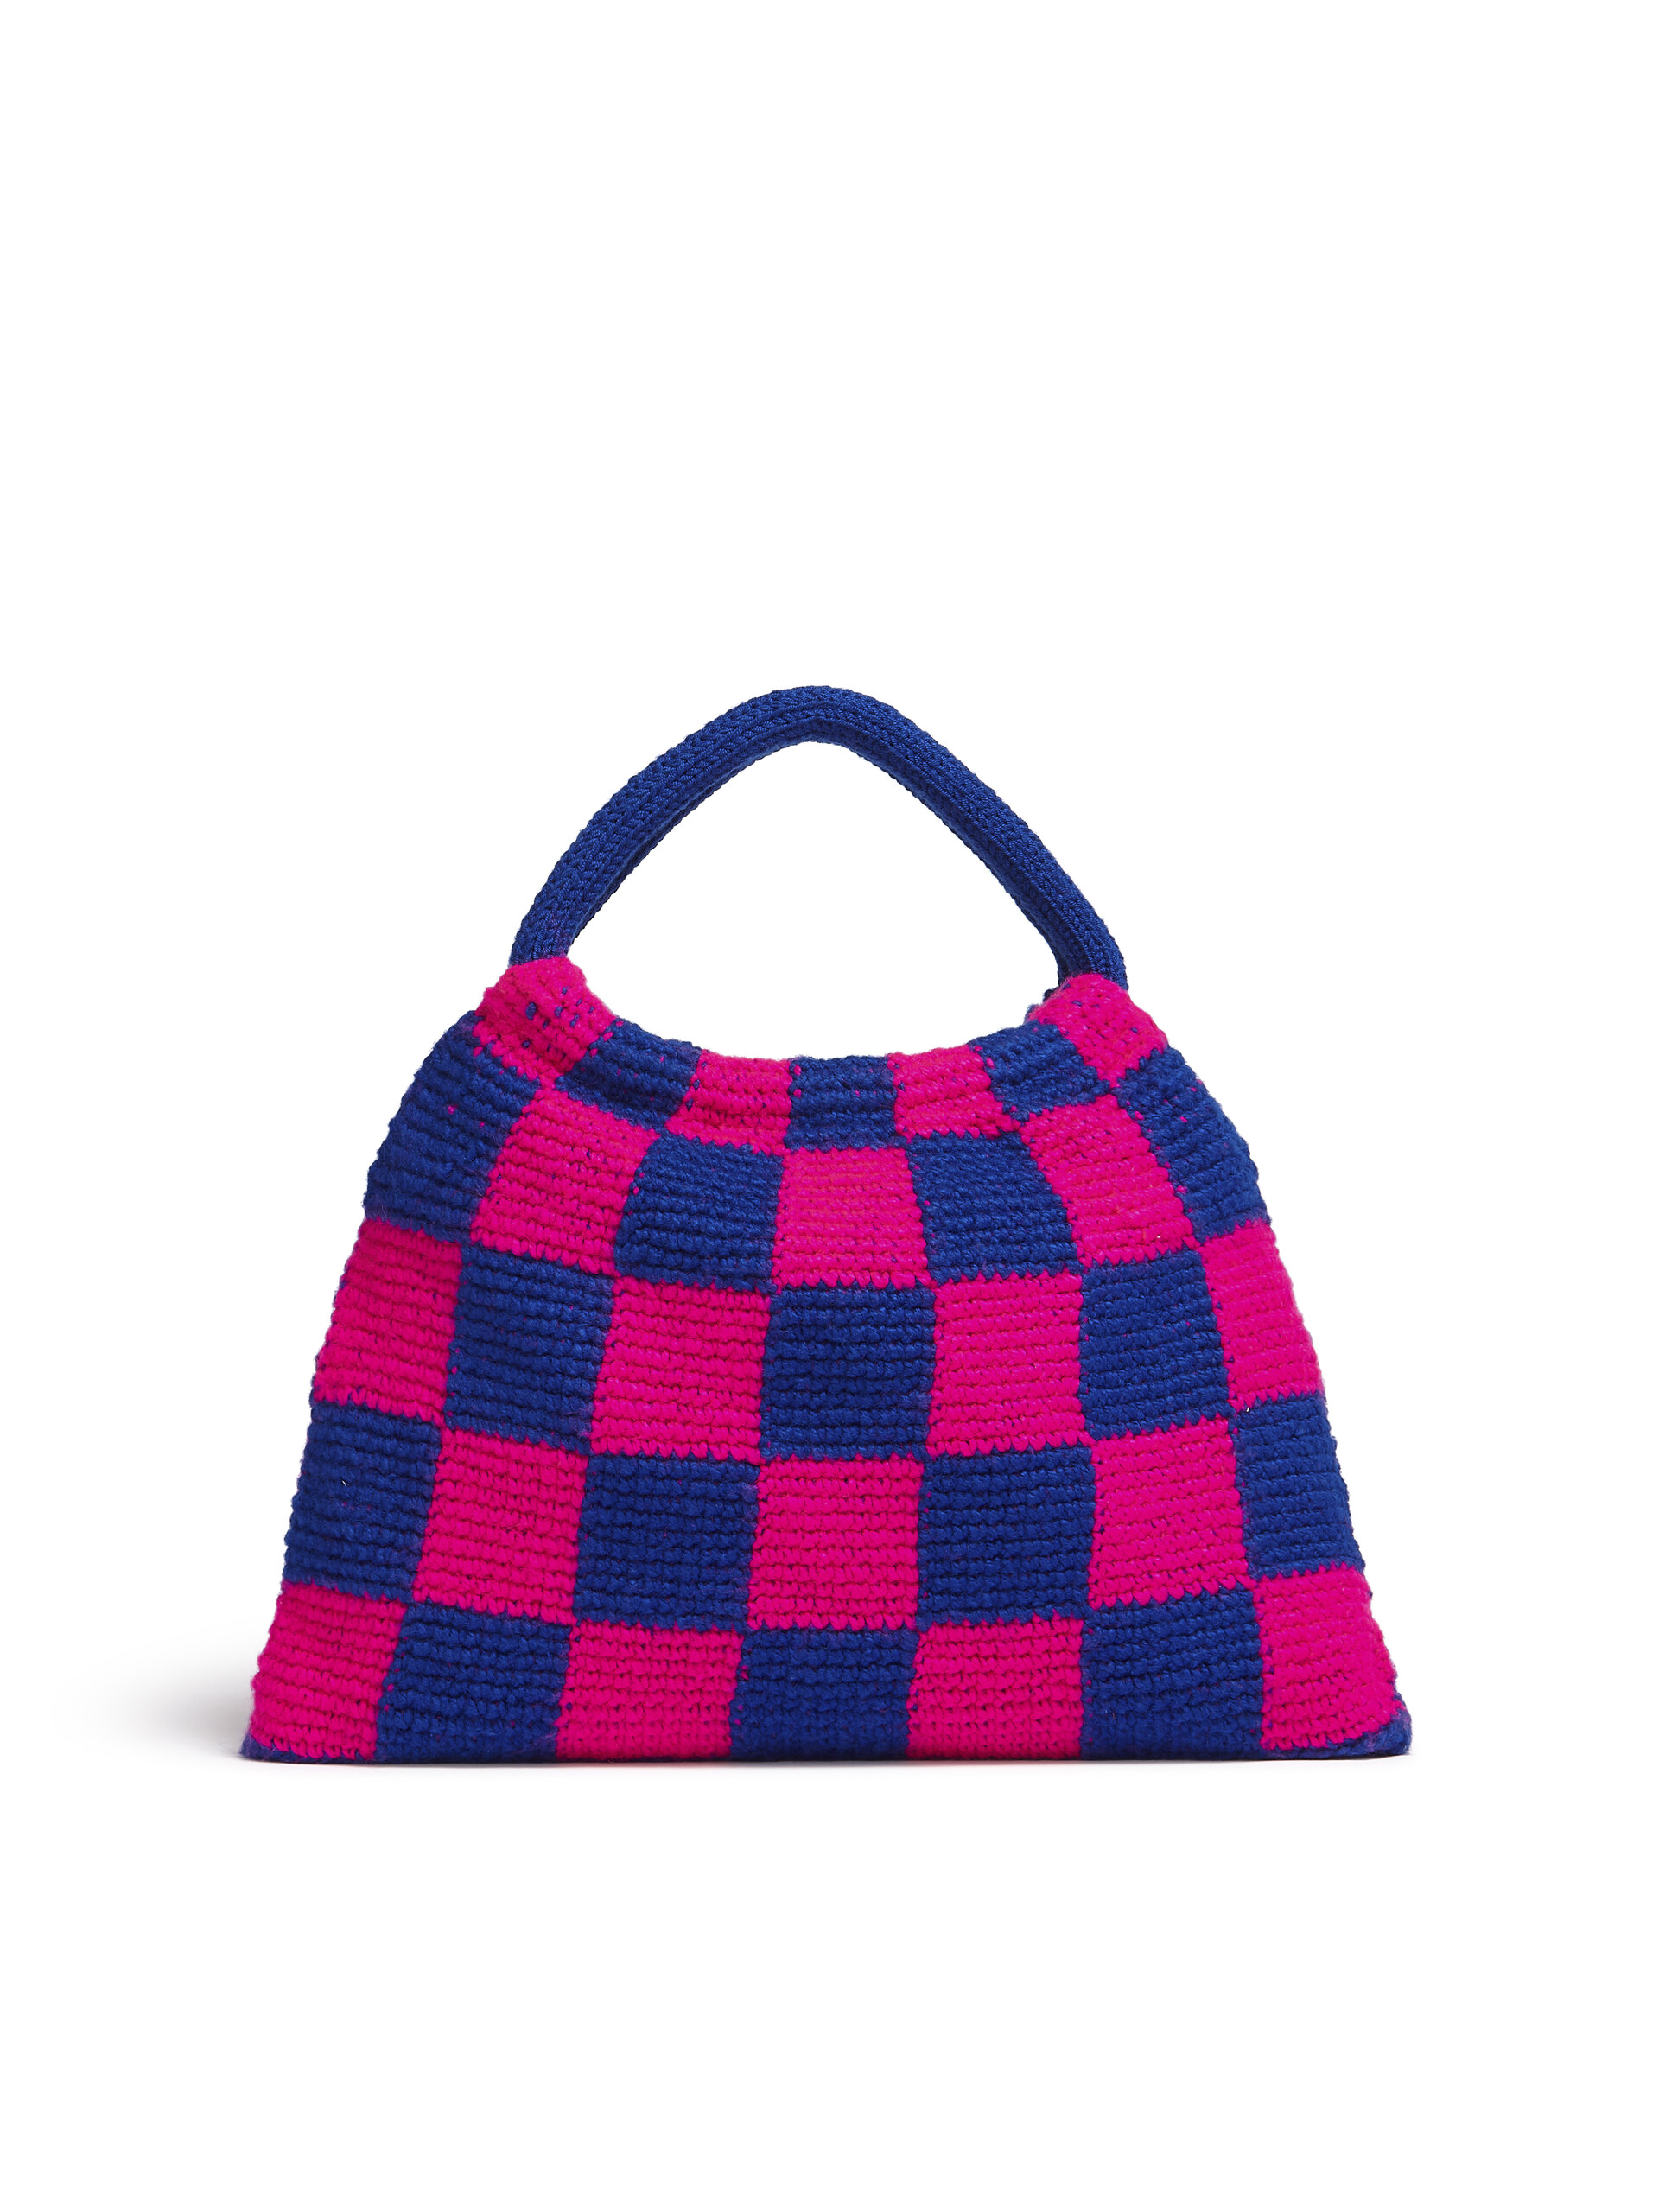 Bolso MARNI MARKET GRANNY de croché rosa y azul - Bolsos shopper - Image 3